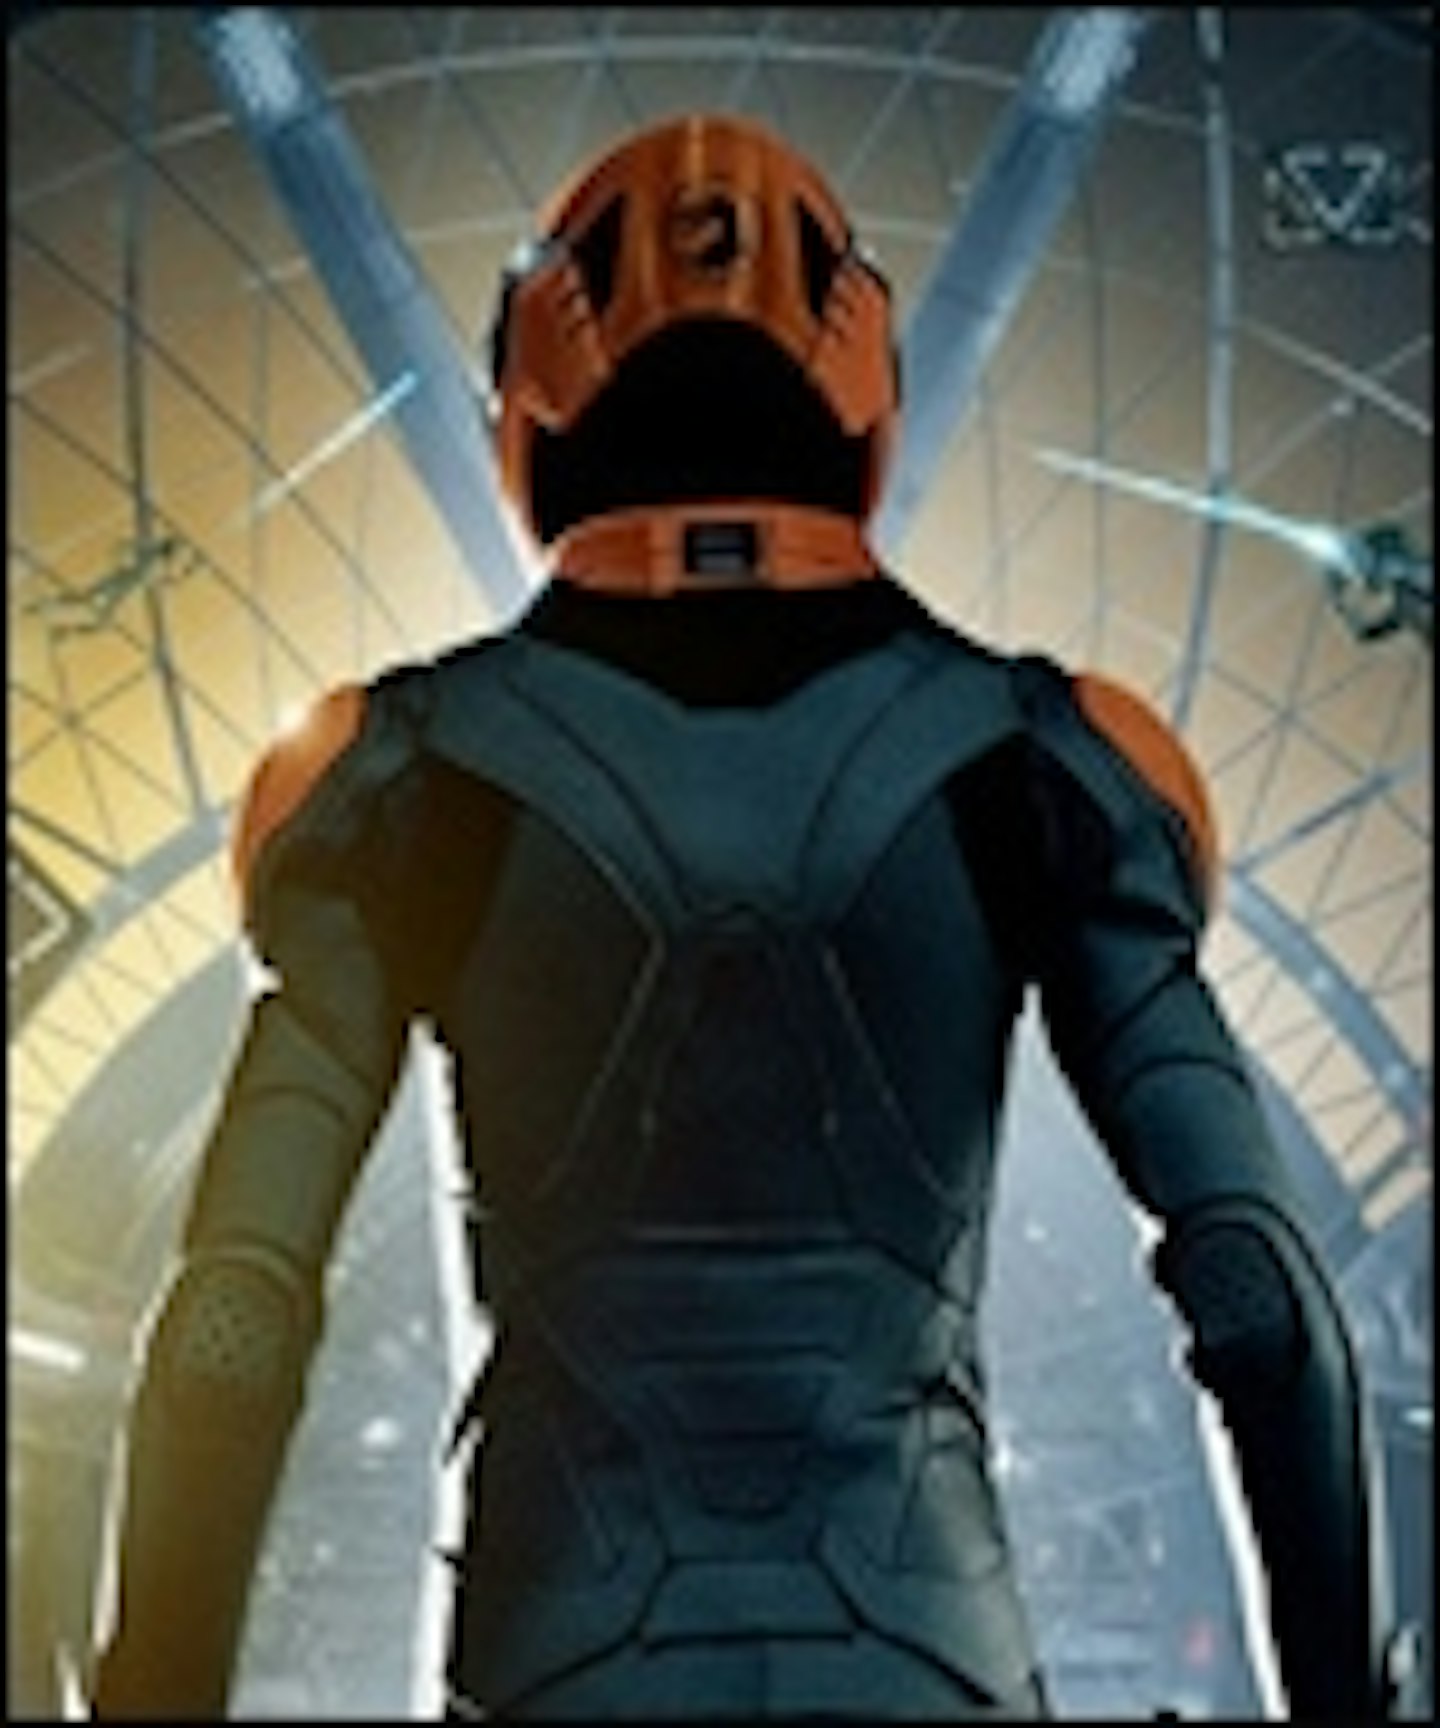 First Ender's Game Poster Arrives Online